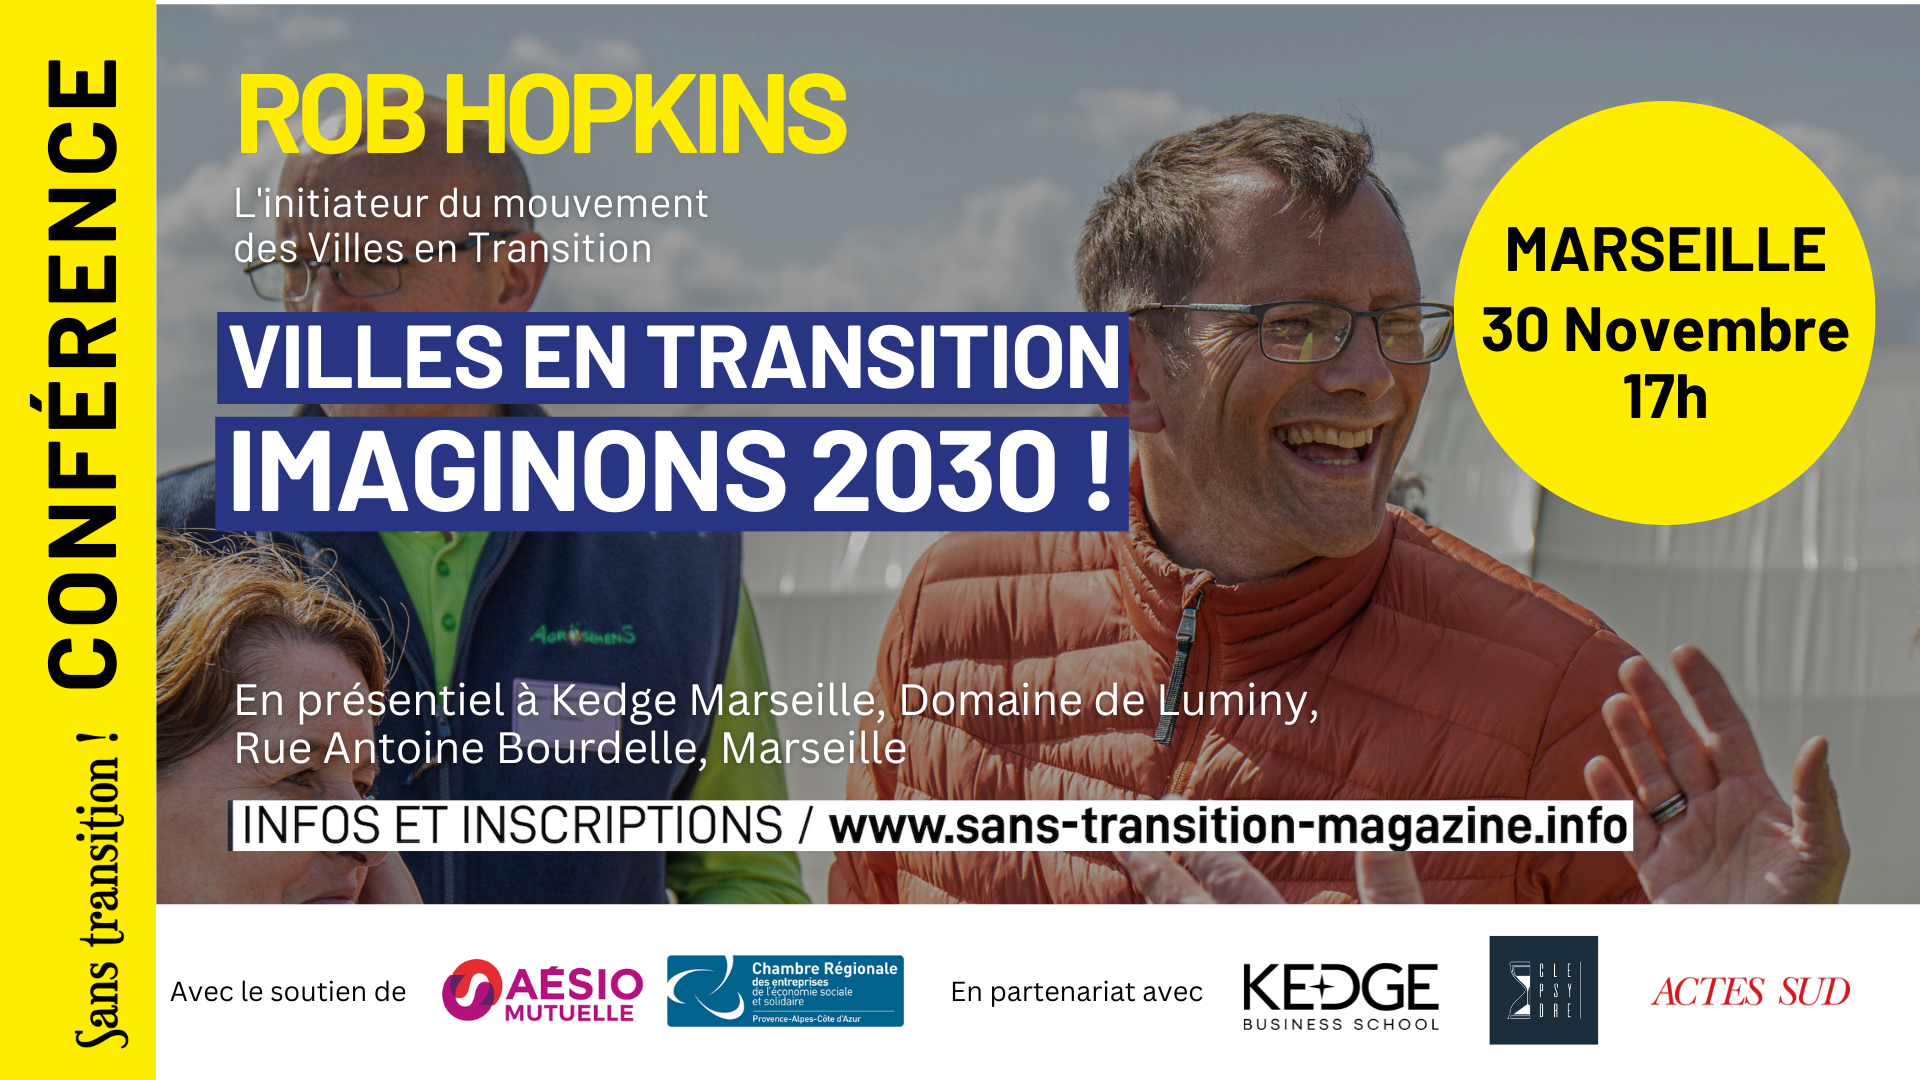 CONFÉRENCES « ACCÉLÉRONS LA TRANSITION ! » AVEC ROB HOPKINS DU 23